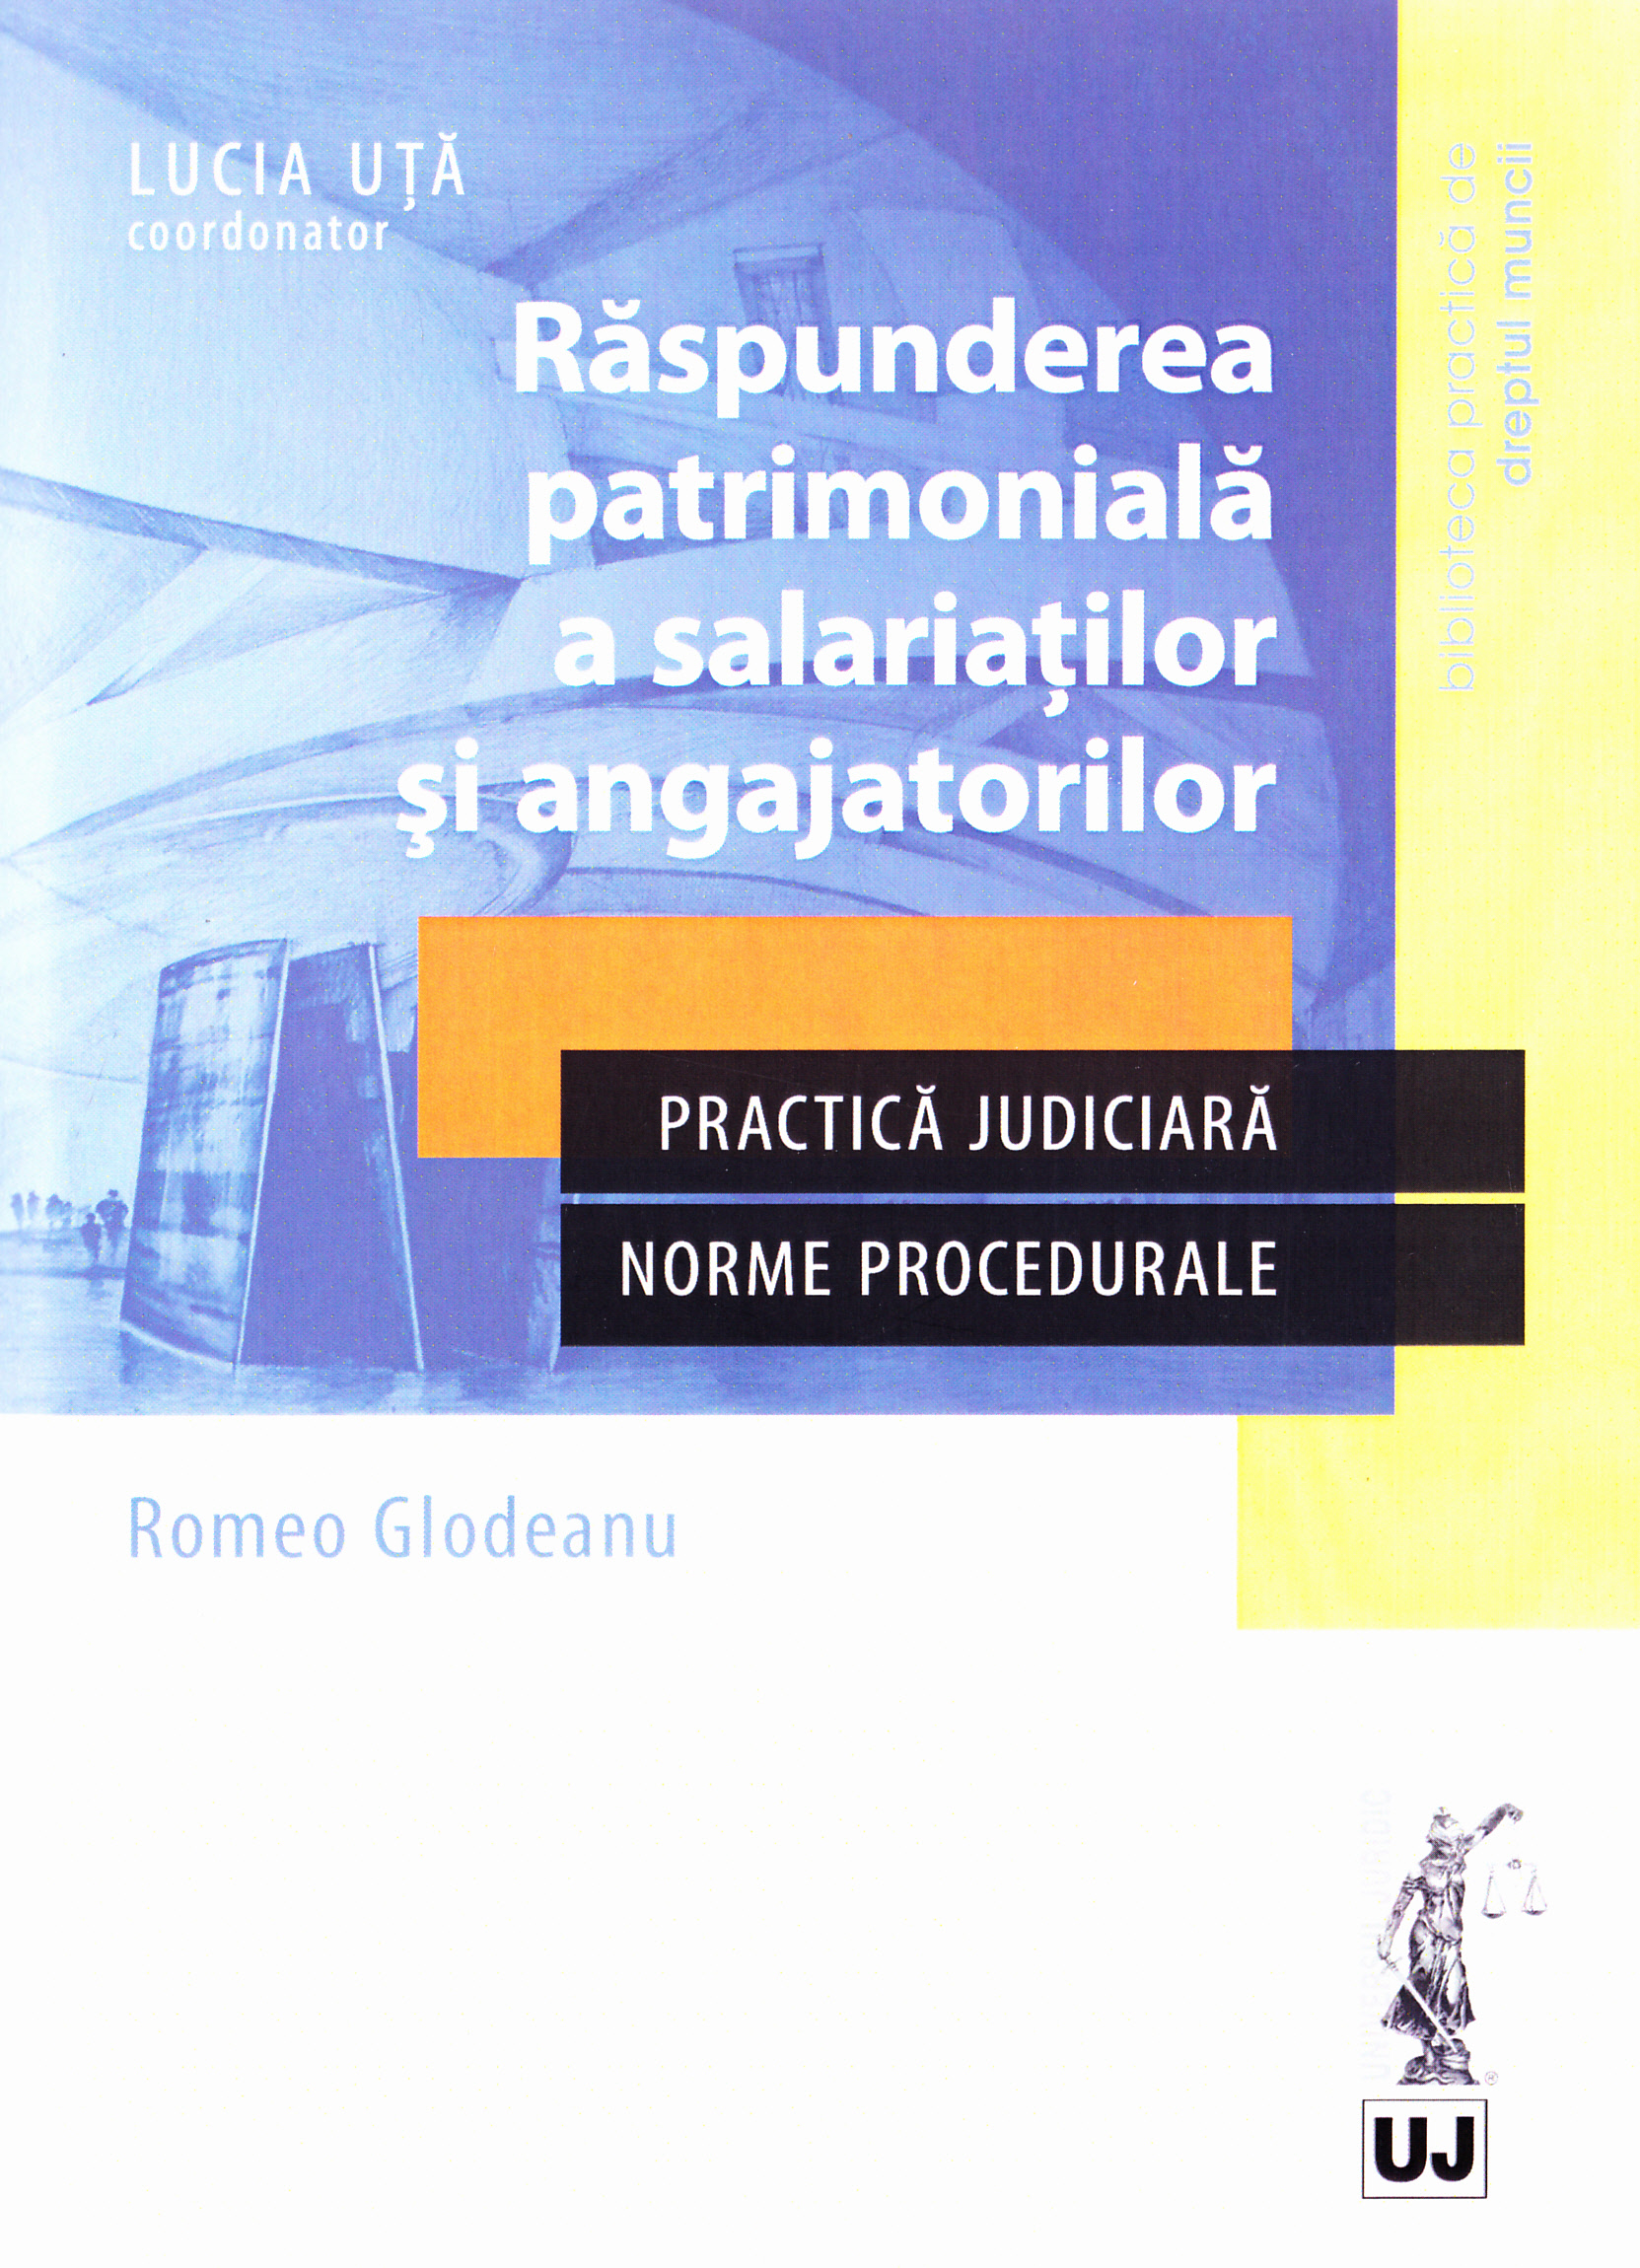 Raspunderea patrimoniala a salariatilor si angajatilor - Romeo Glodeanu